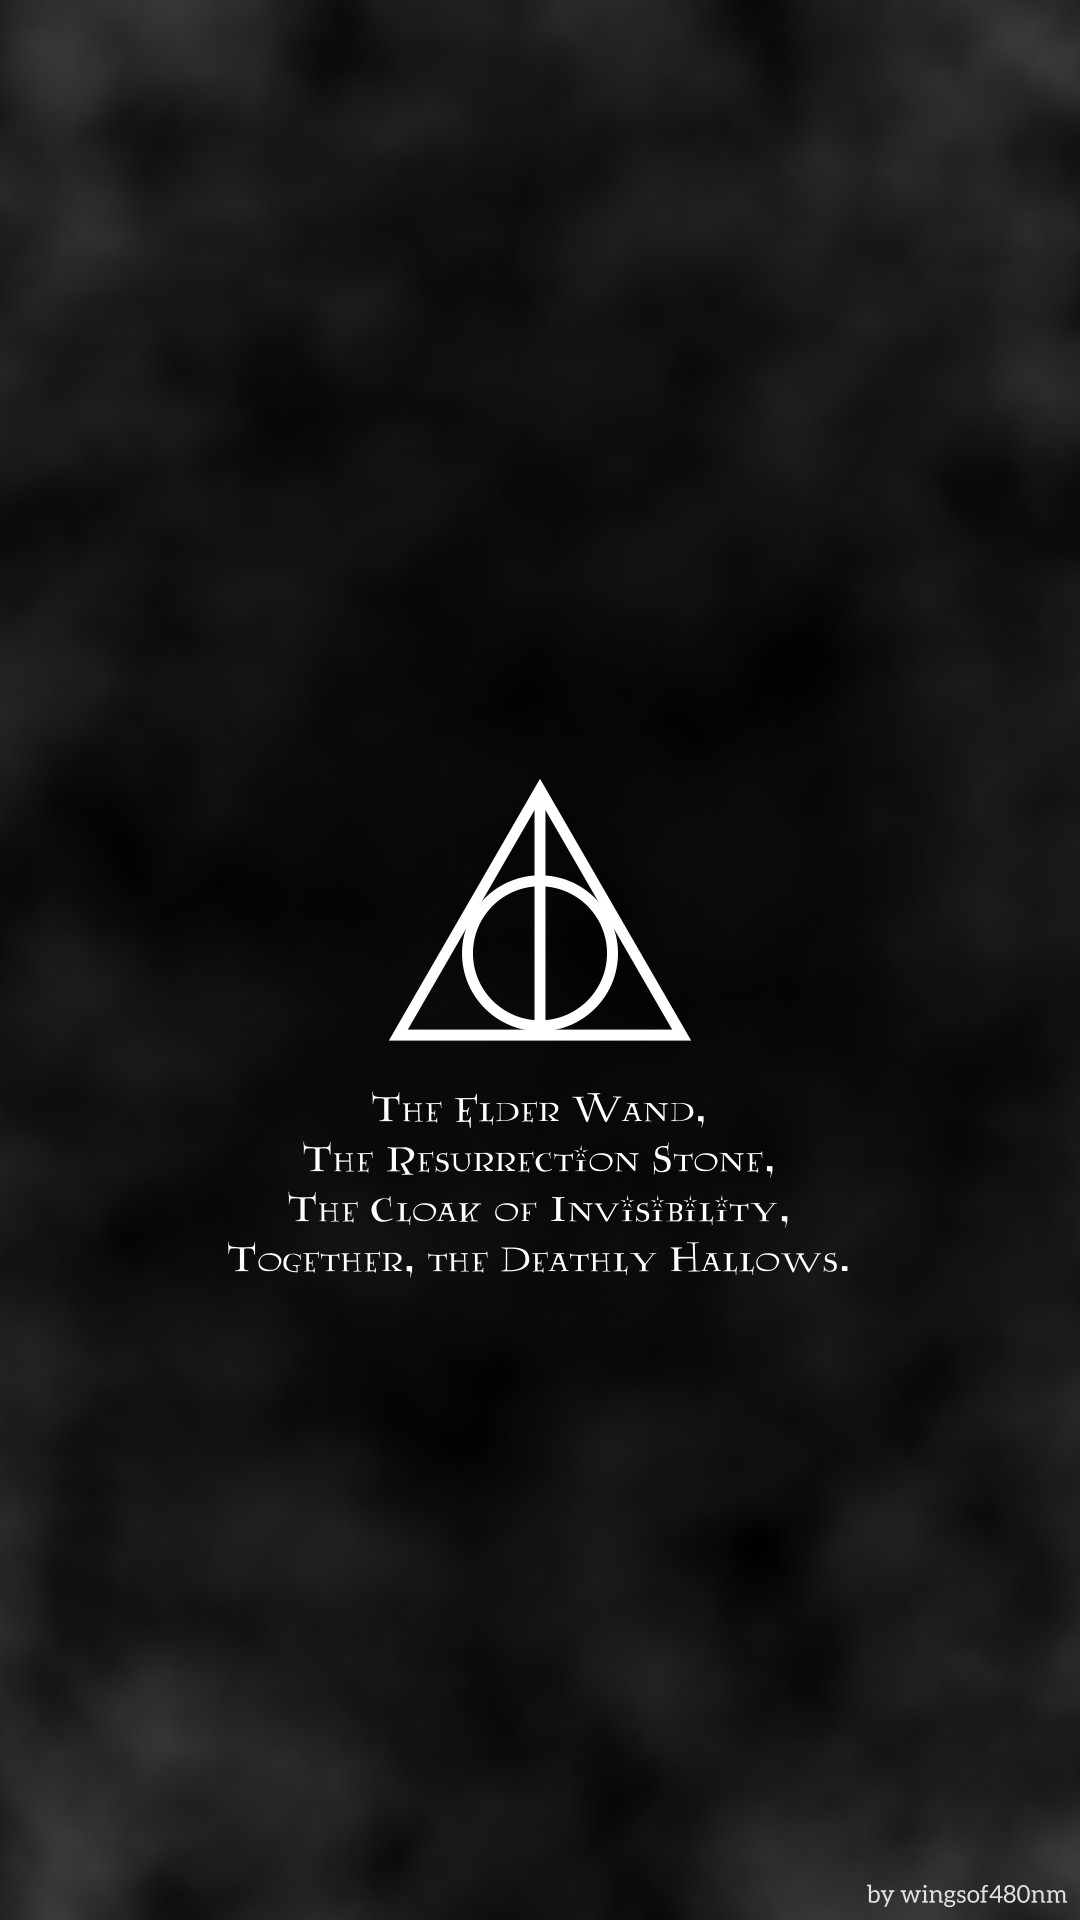 1080x1920 Best 25 Harry potter wallpaper ideas on Pinterest | Harry potter ... Harry  Potter Deathly Hallows ...